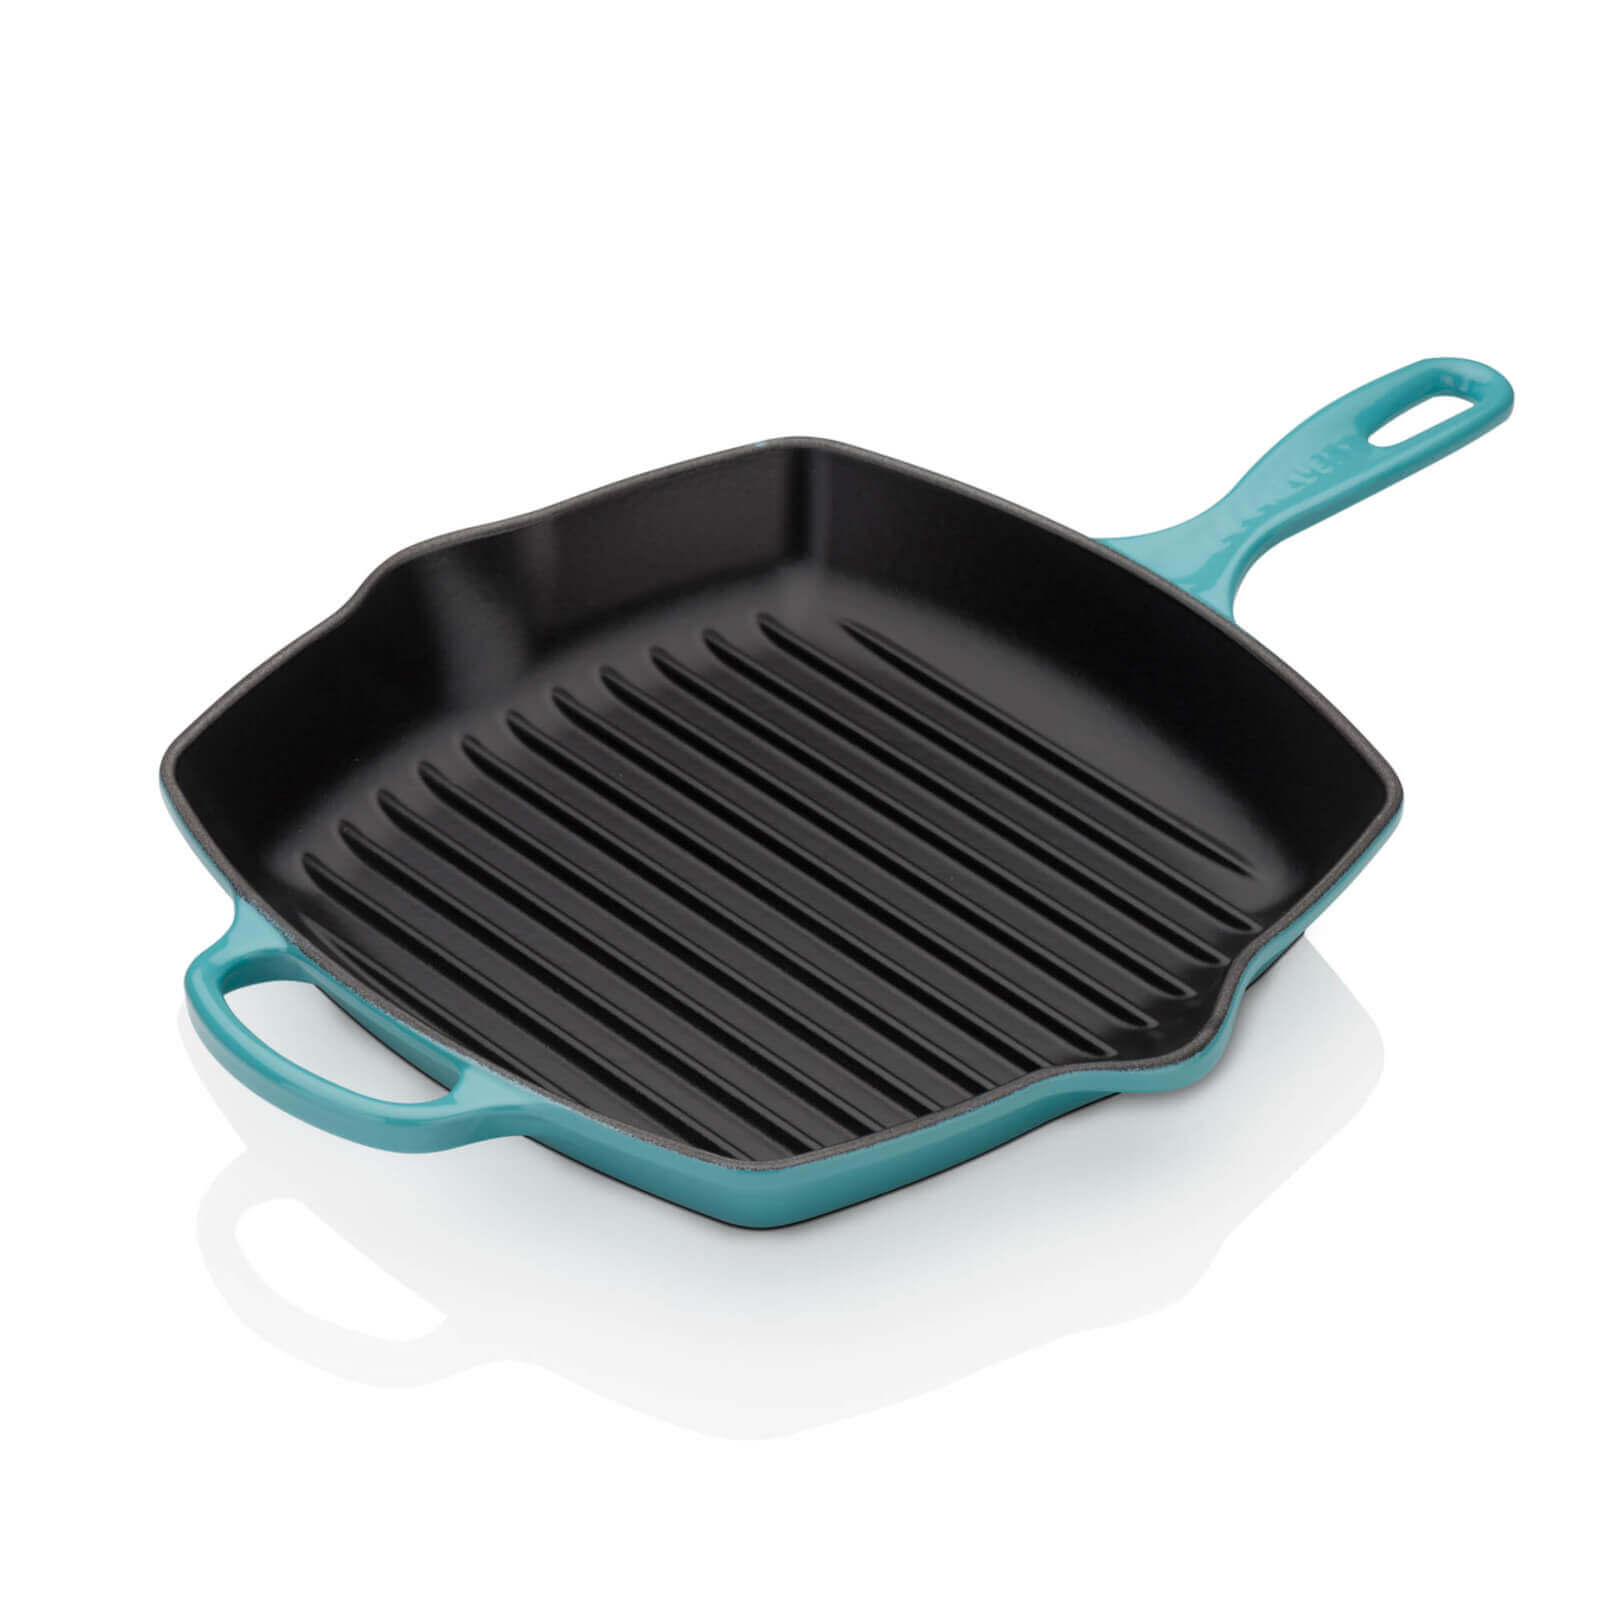 Photos - Other kitchen utensils Le Creuset Signature Cast Iron Square Grillet - 26cm - Teal 201832617 